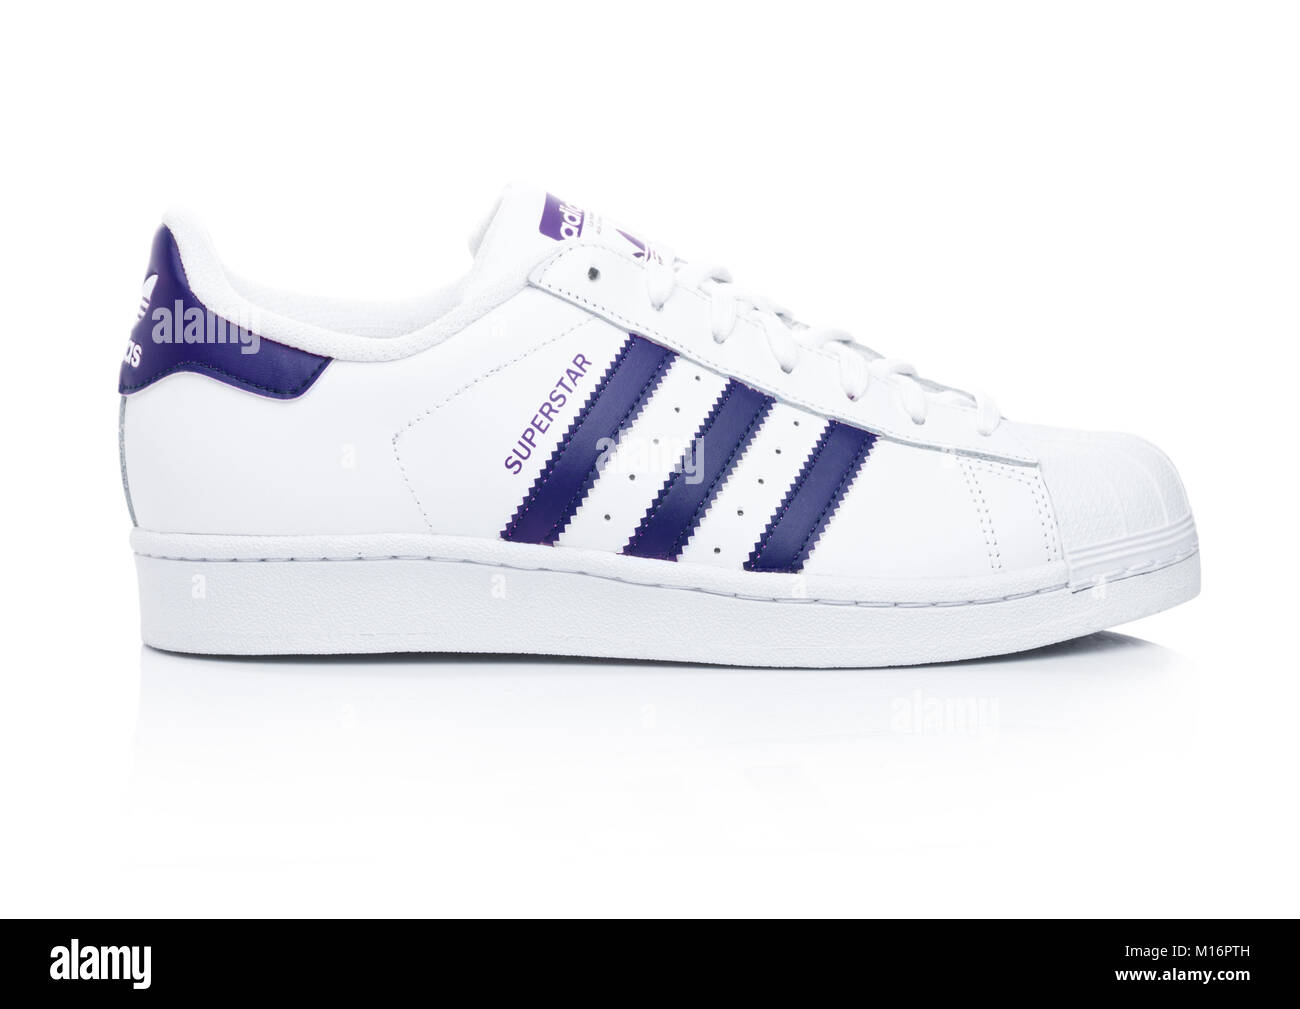 Londres, Reino Unido - 24 de enero de 2018: Originales Adidas Superstar  zapatos azul sobre fondo blanco.corporación multinacional alemana que  diseña y fabrica Fotografía de stock - Alamy